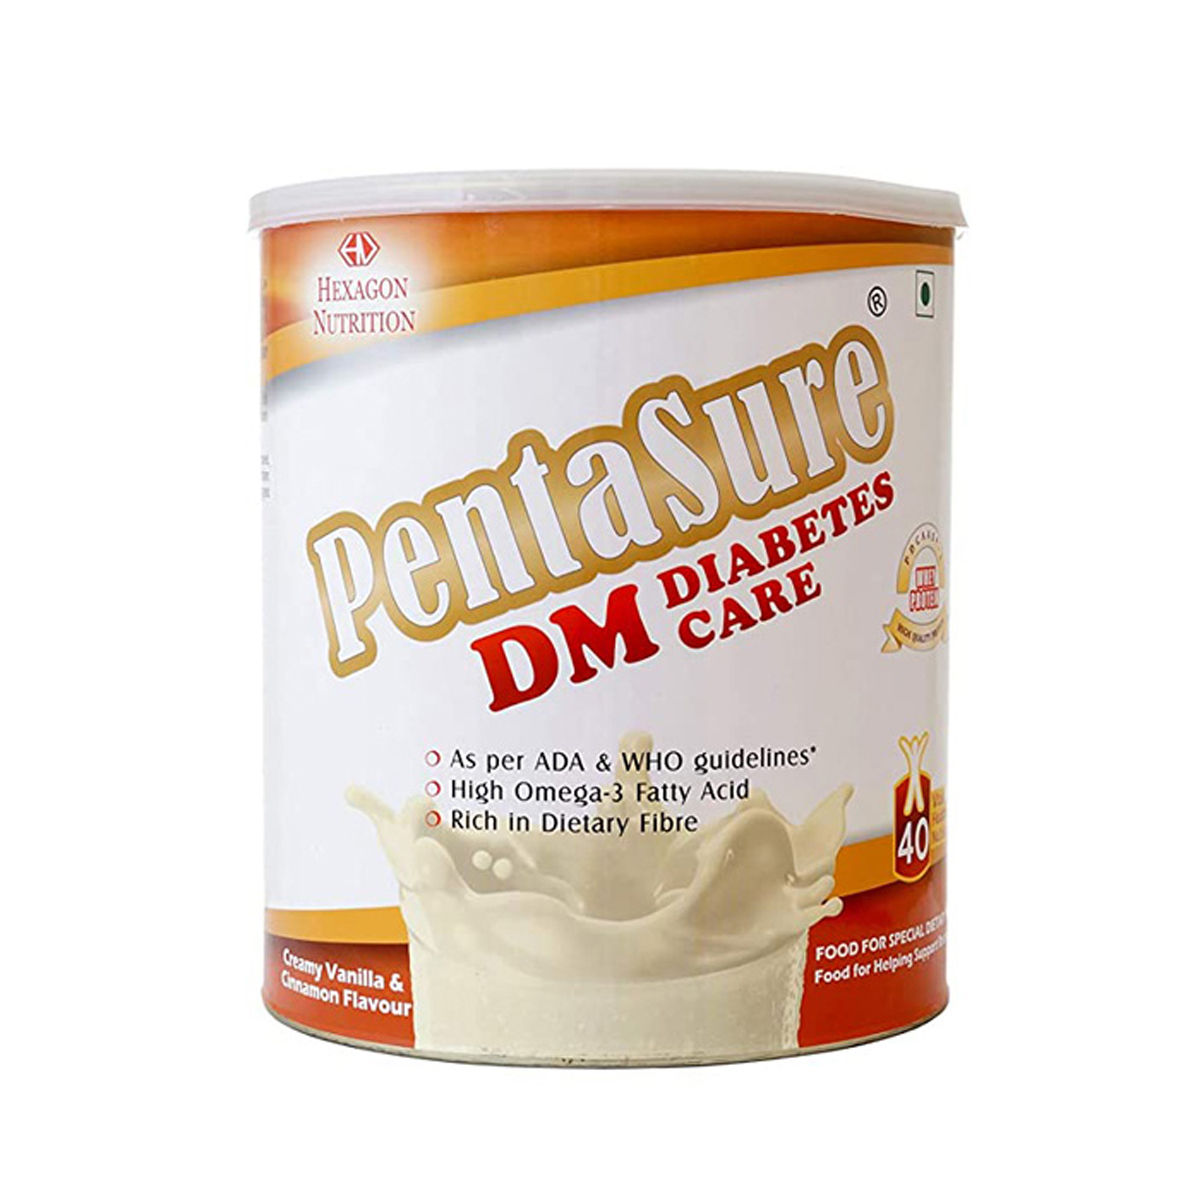 Buy PentaSure DM Diabetes Care Creamy Vanilla & Cinnamon Powder 1 kg Online